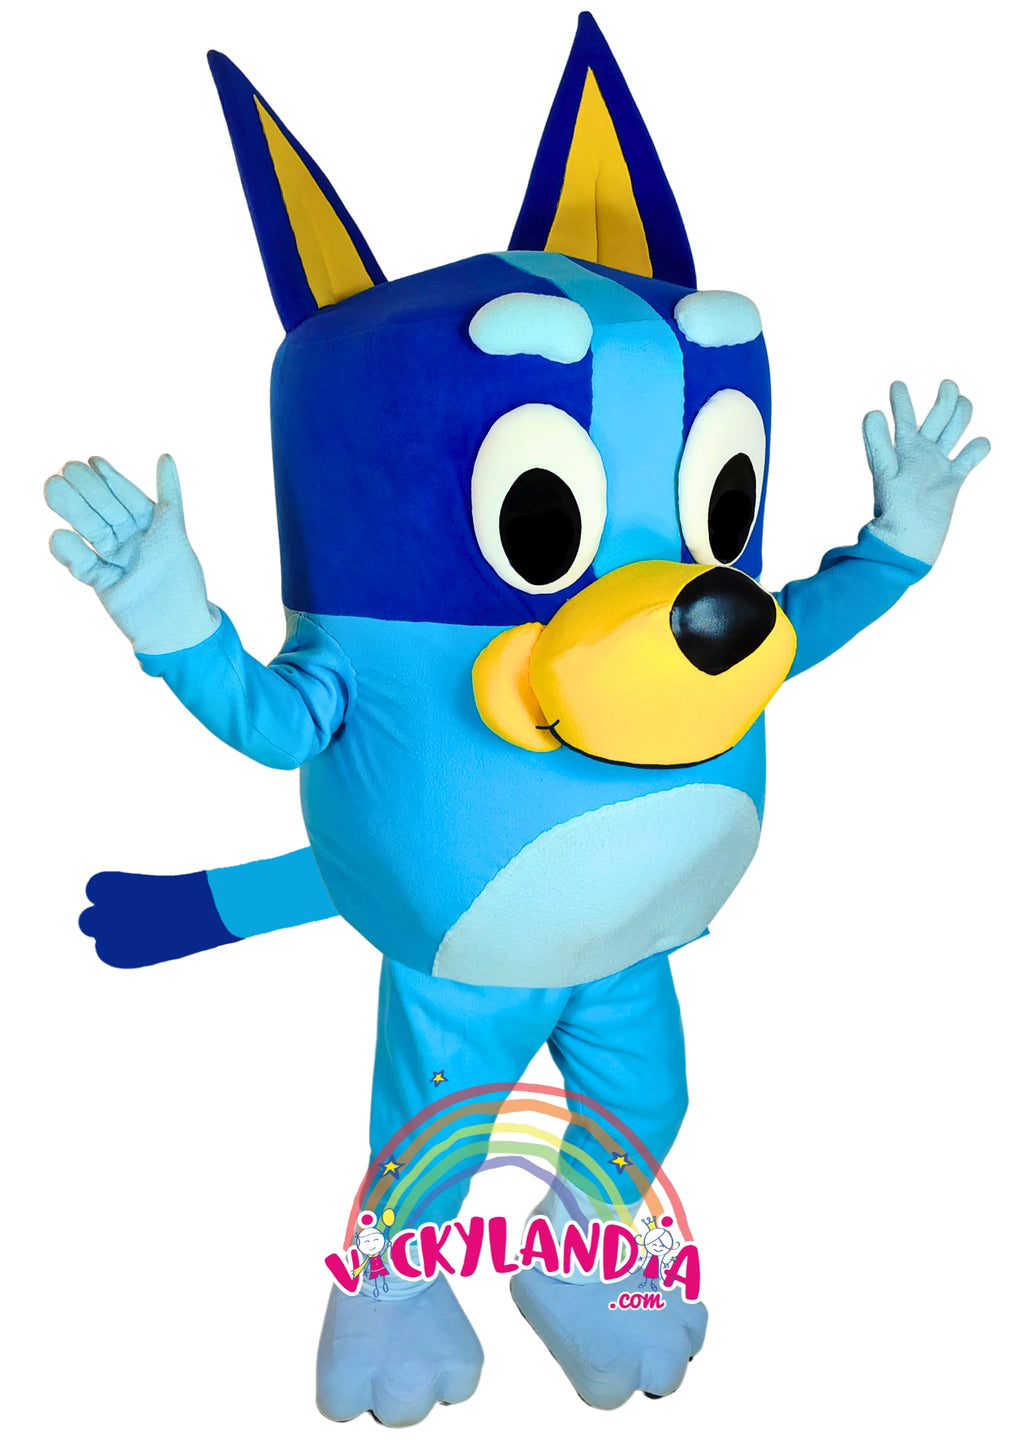 Descubre la magia de nuestro muñeco publicitario de Cachorra Azul en Vickylandia. Son disfraces cabezones perfectos para fiestas infantiles, shows, cumpleaños, estrategias publicitarias, carnavales, fiestas patronales, espectáculos, cabalgatas y cualquier tipo de evento